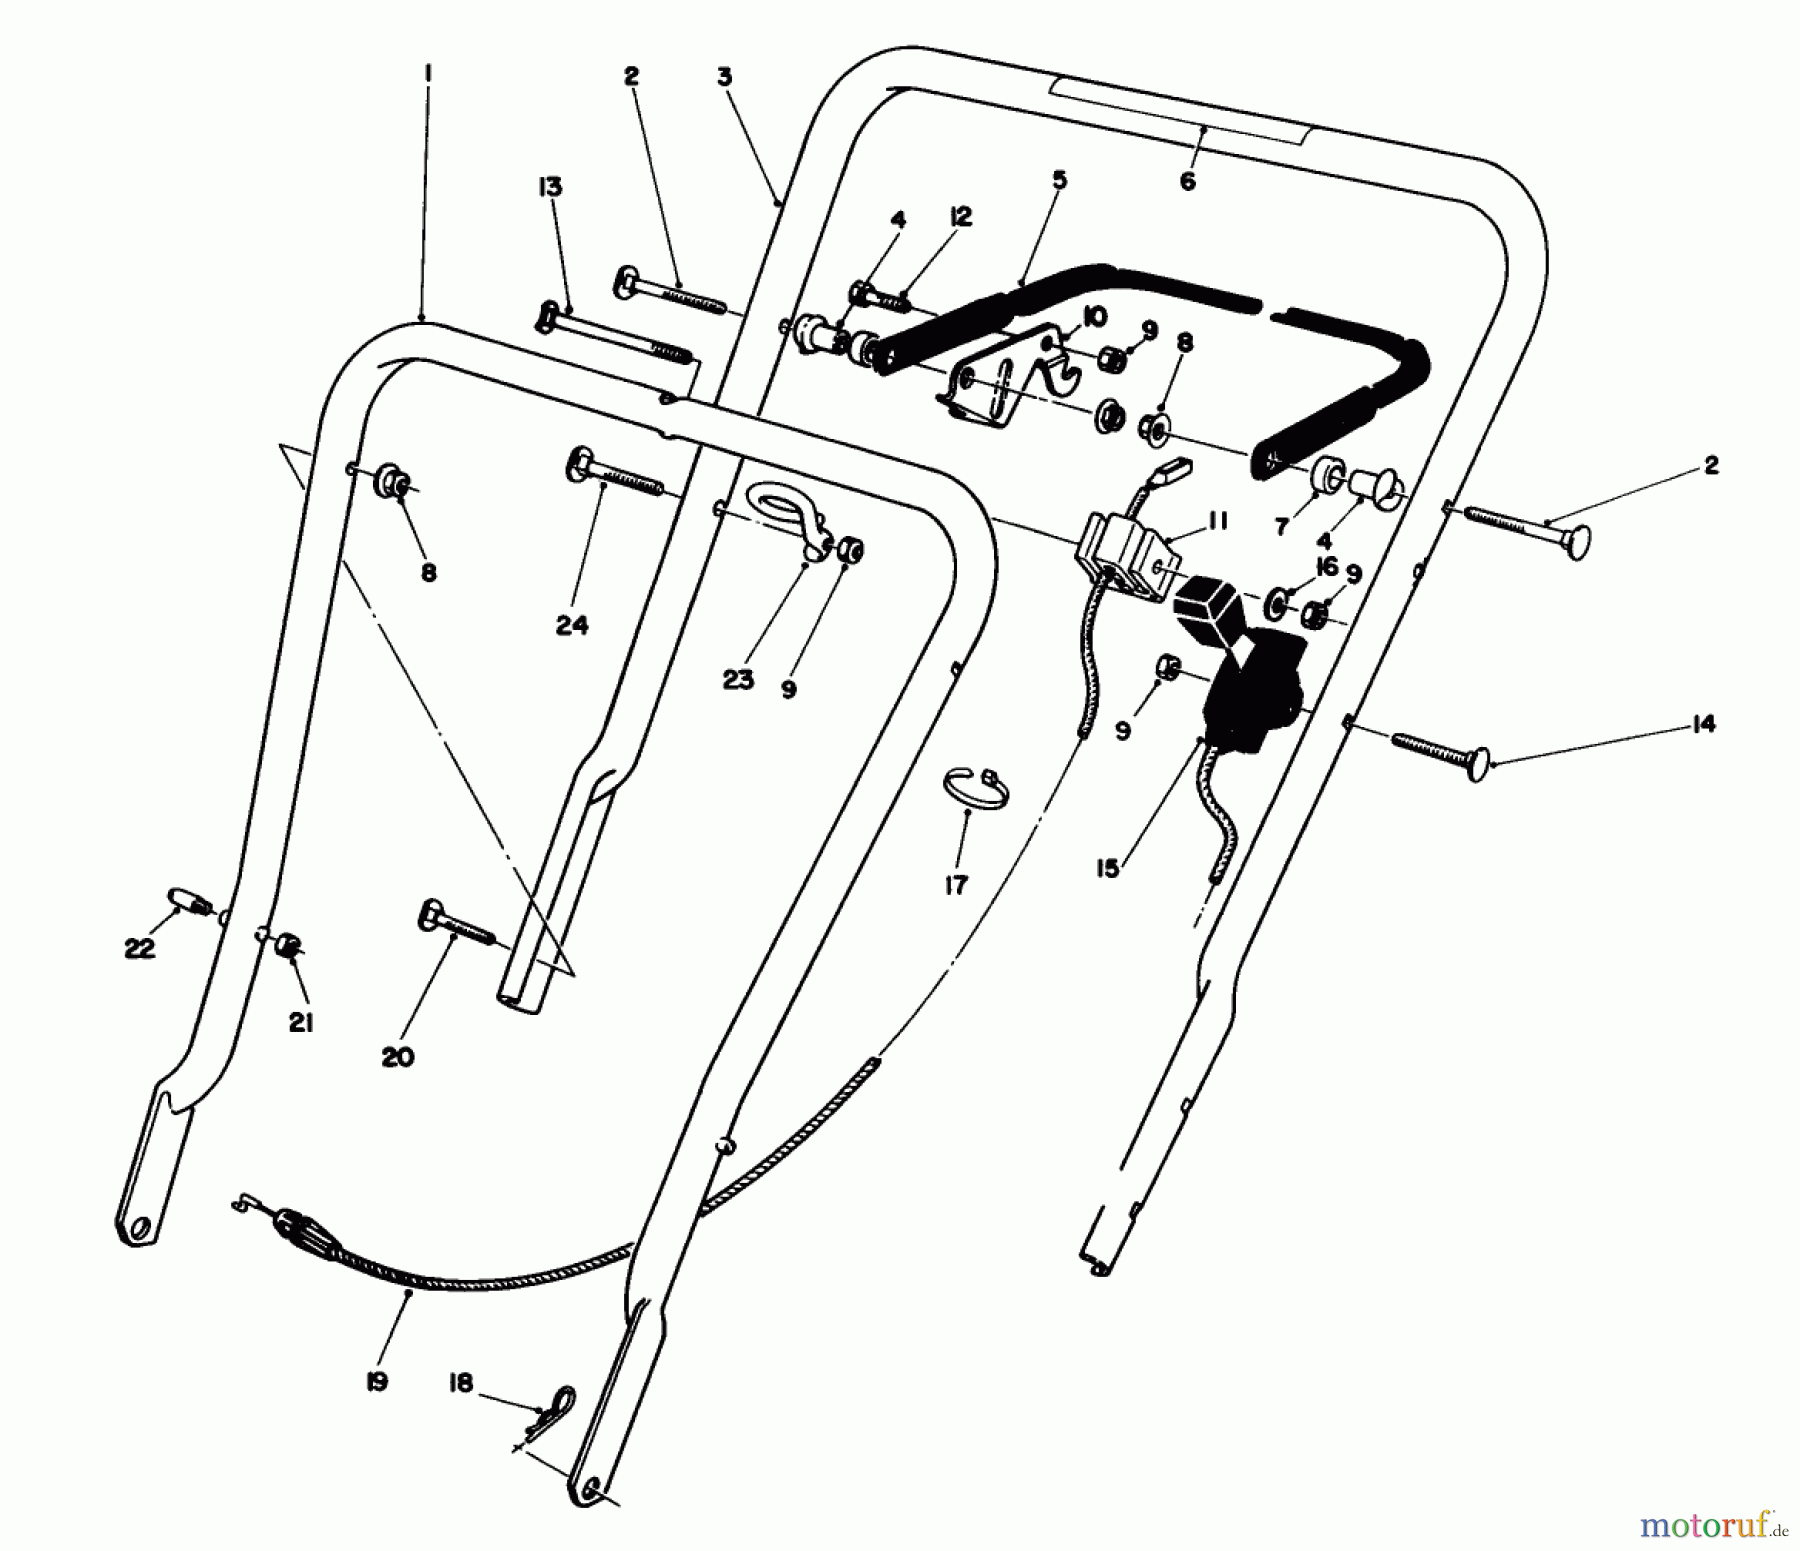  Toro Neu Mowers, Walk-Behind Seite 1 16400 - Toro Lawnmower, 1991 (1000001-1999999) HANDLE ASSEMBLY